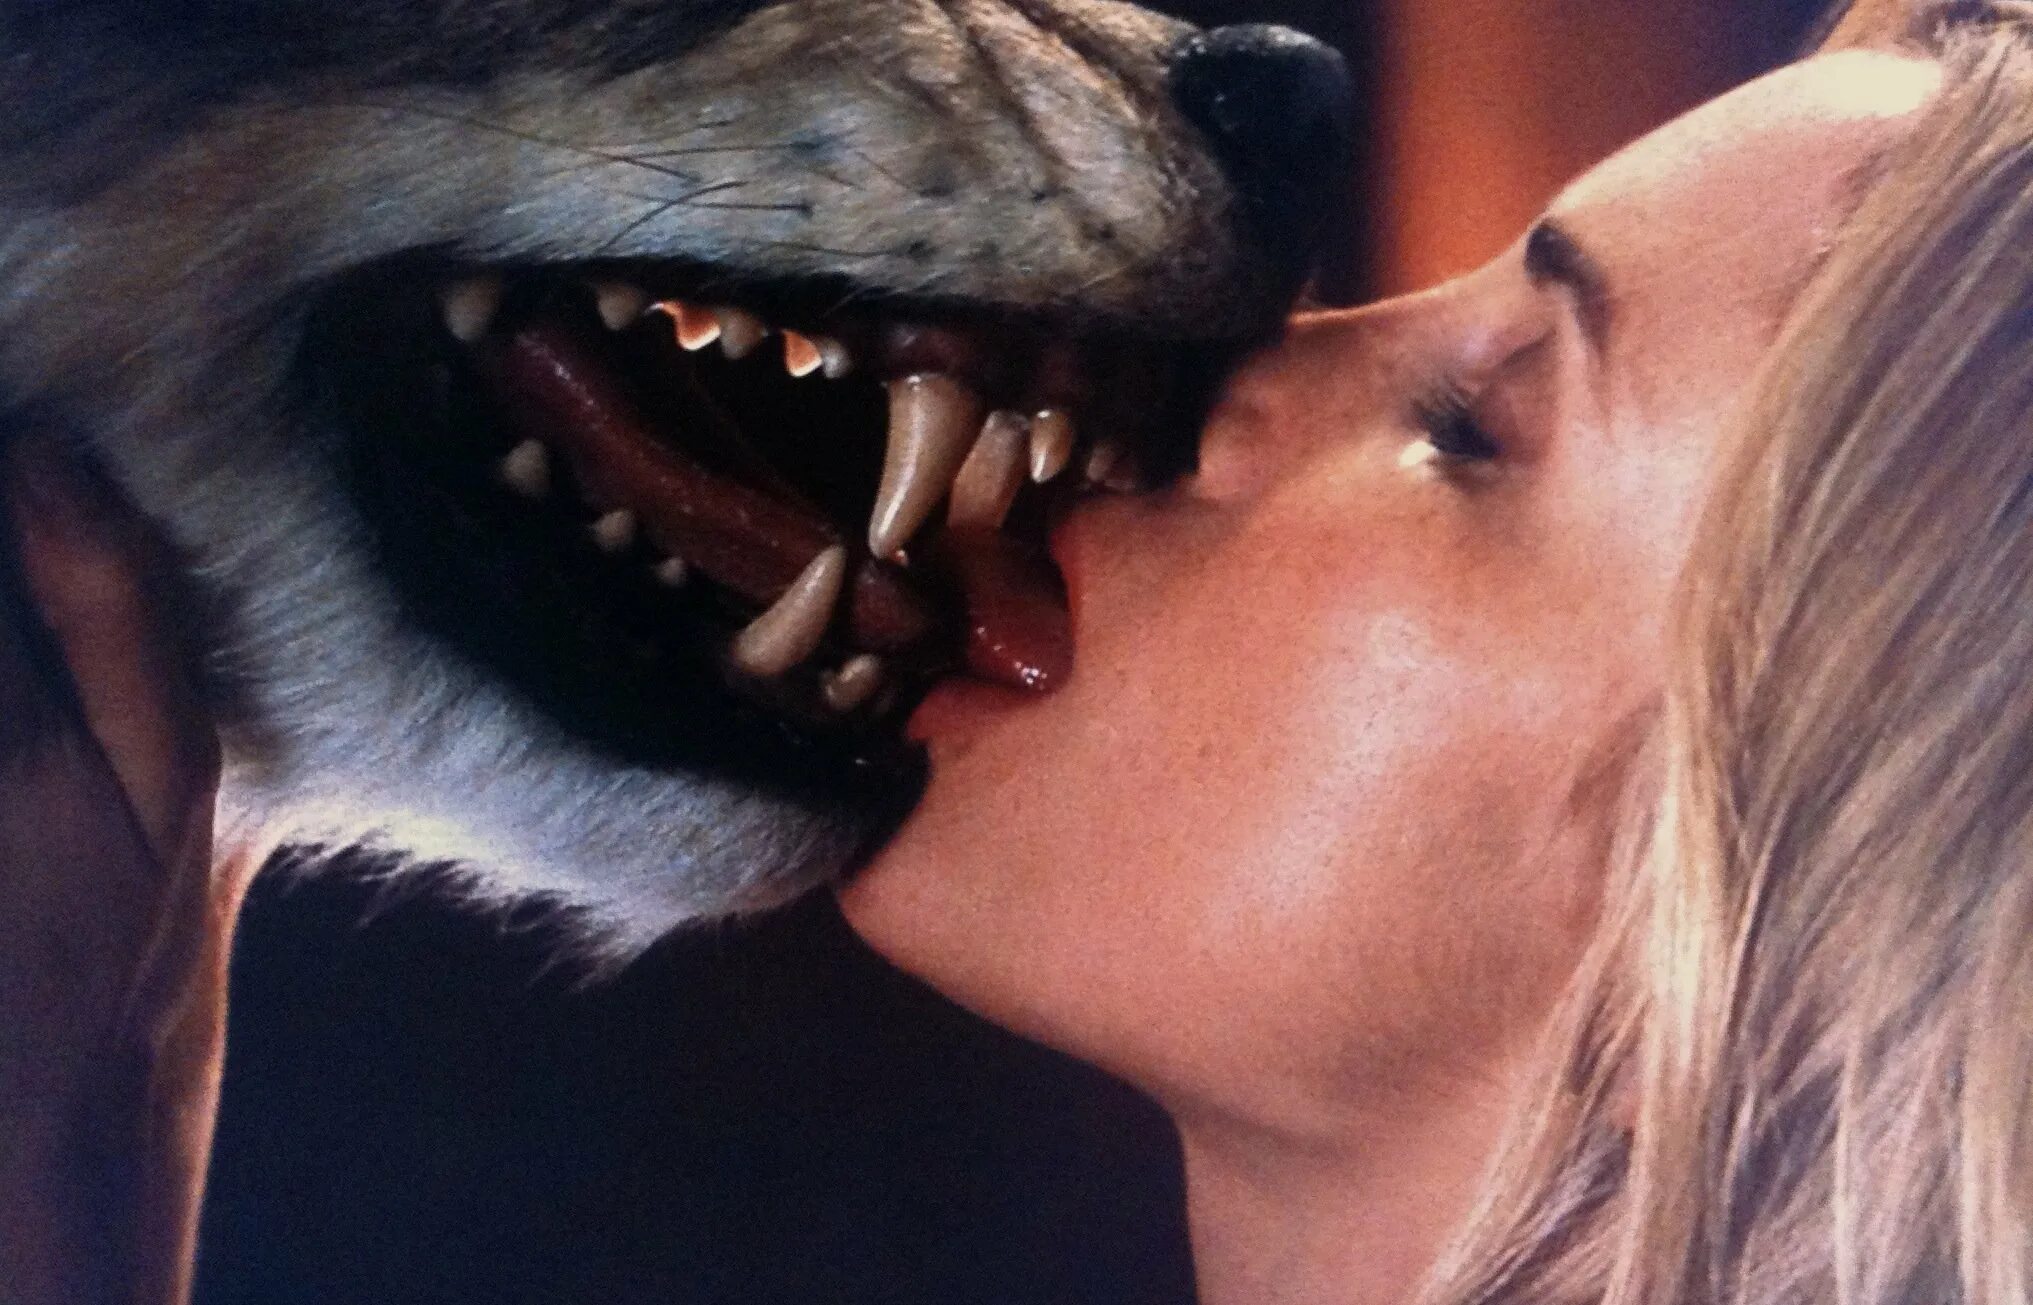 Lick movies. Поцелуй волка. Девушка целует волка.